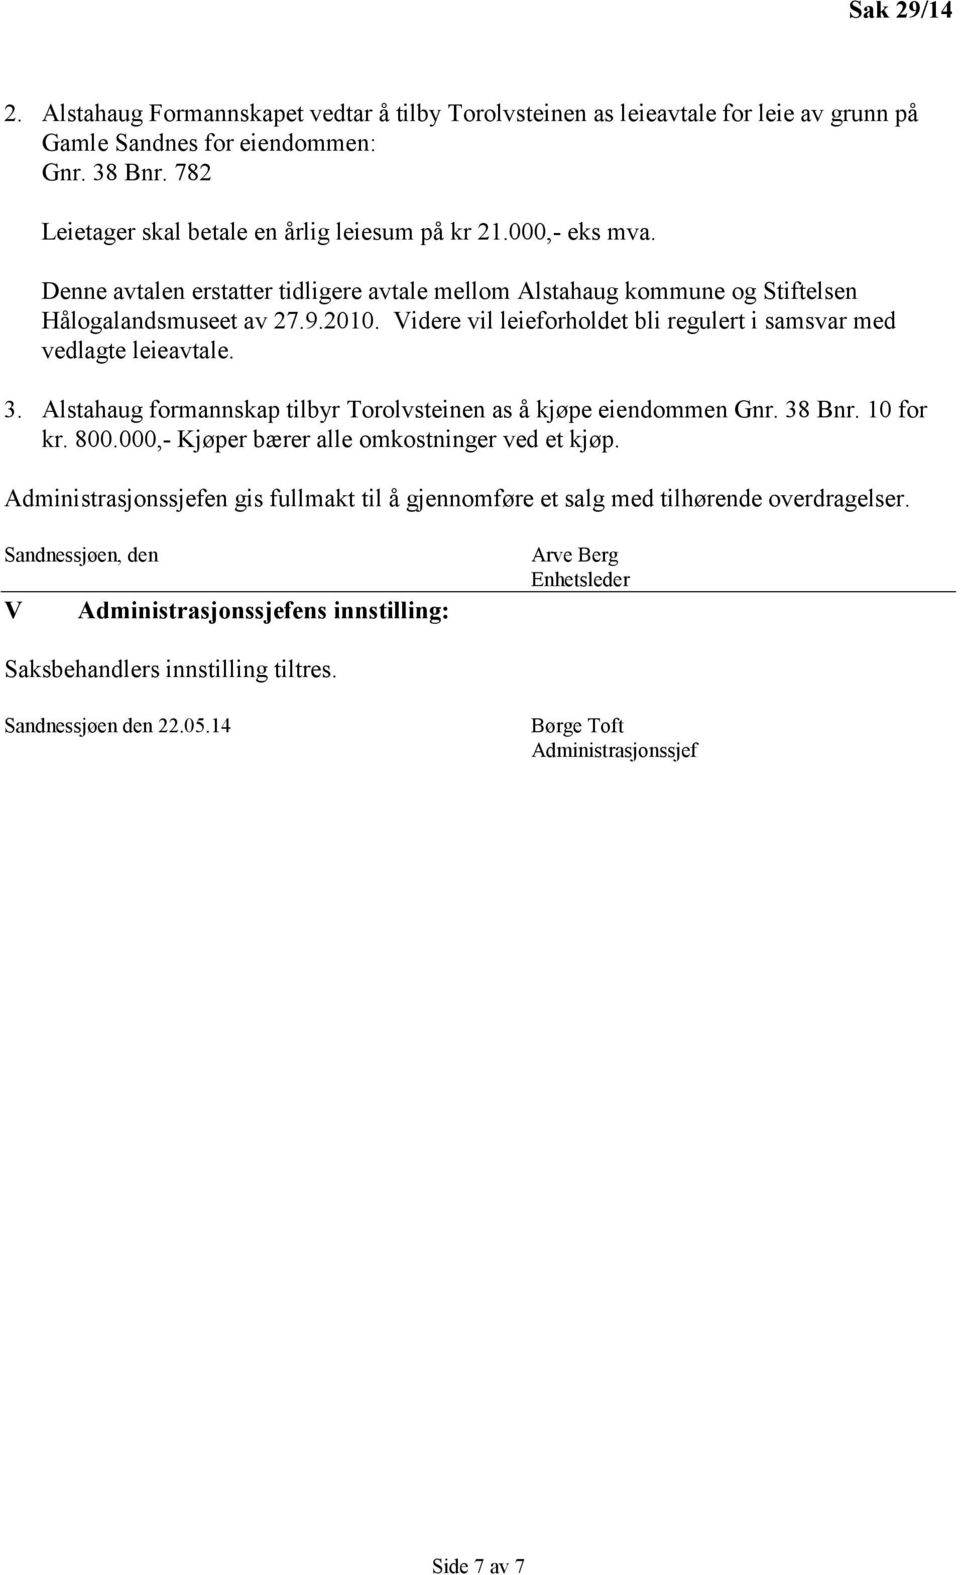 3. Alstahaug formannskap tilbyr Torolvsteinen as å kjøpe eiendommen Gnr. 38 Bnr. 10 for kr. 800.000,- Kjøper bærer alle omkostninger ved et kjøp.